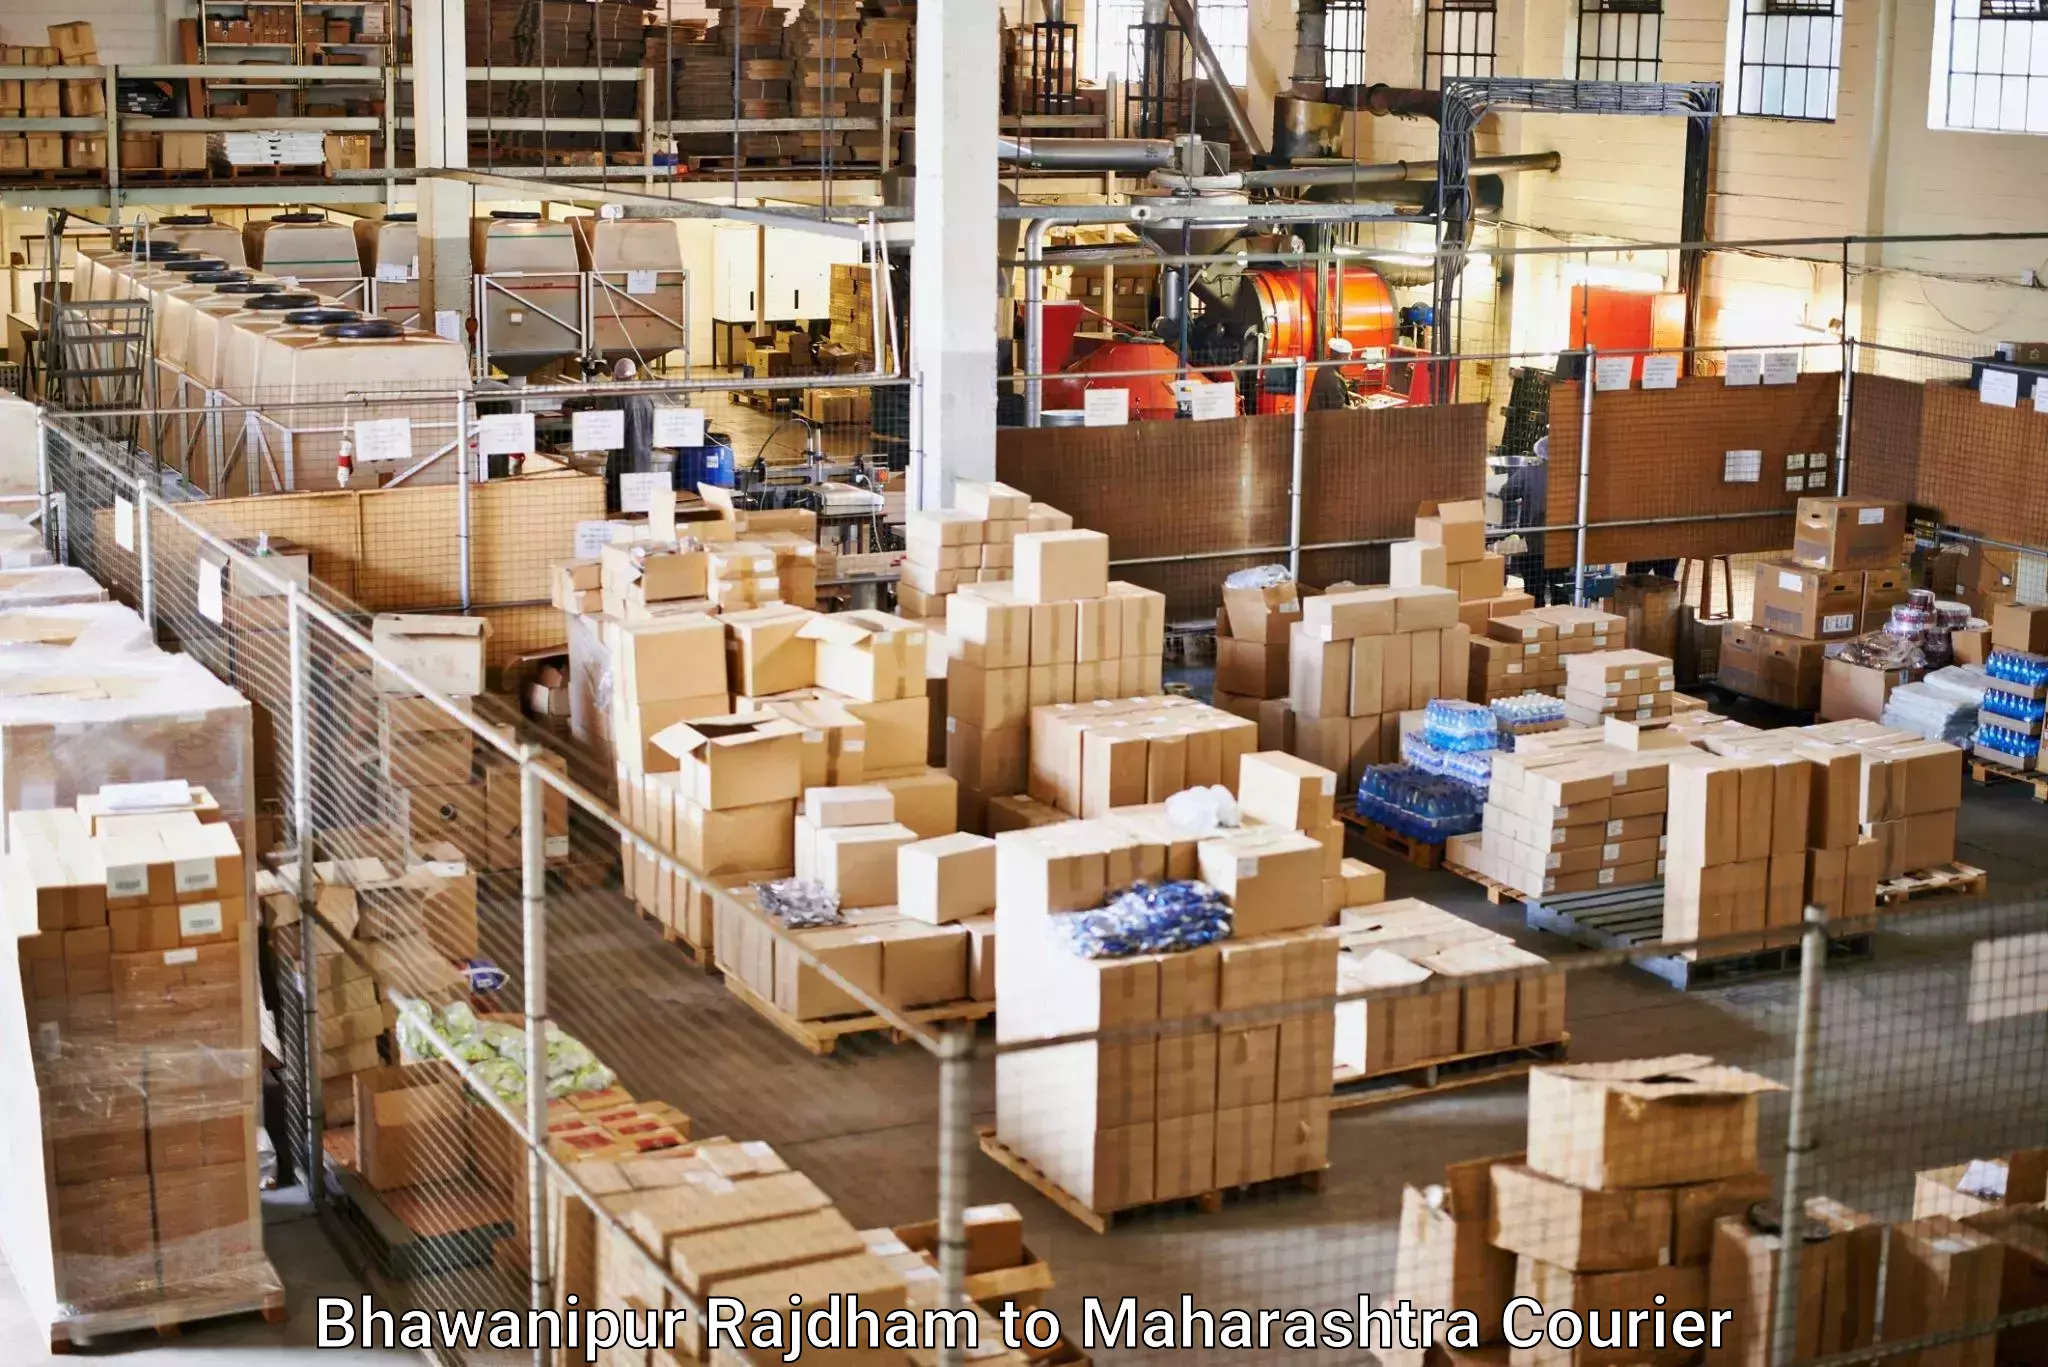 Expedited shipping solutions Bhawanipur Rajdham to Bhiwandi